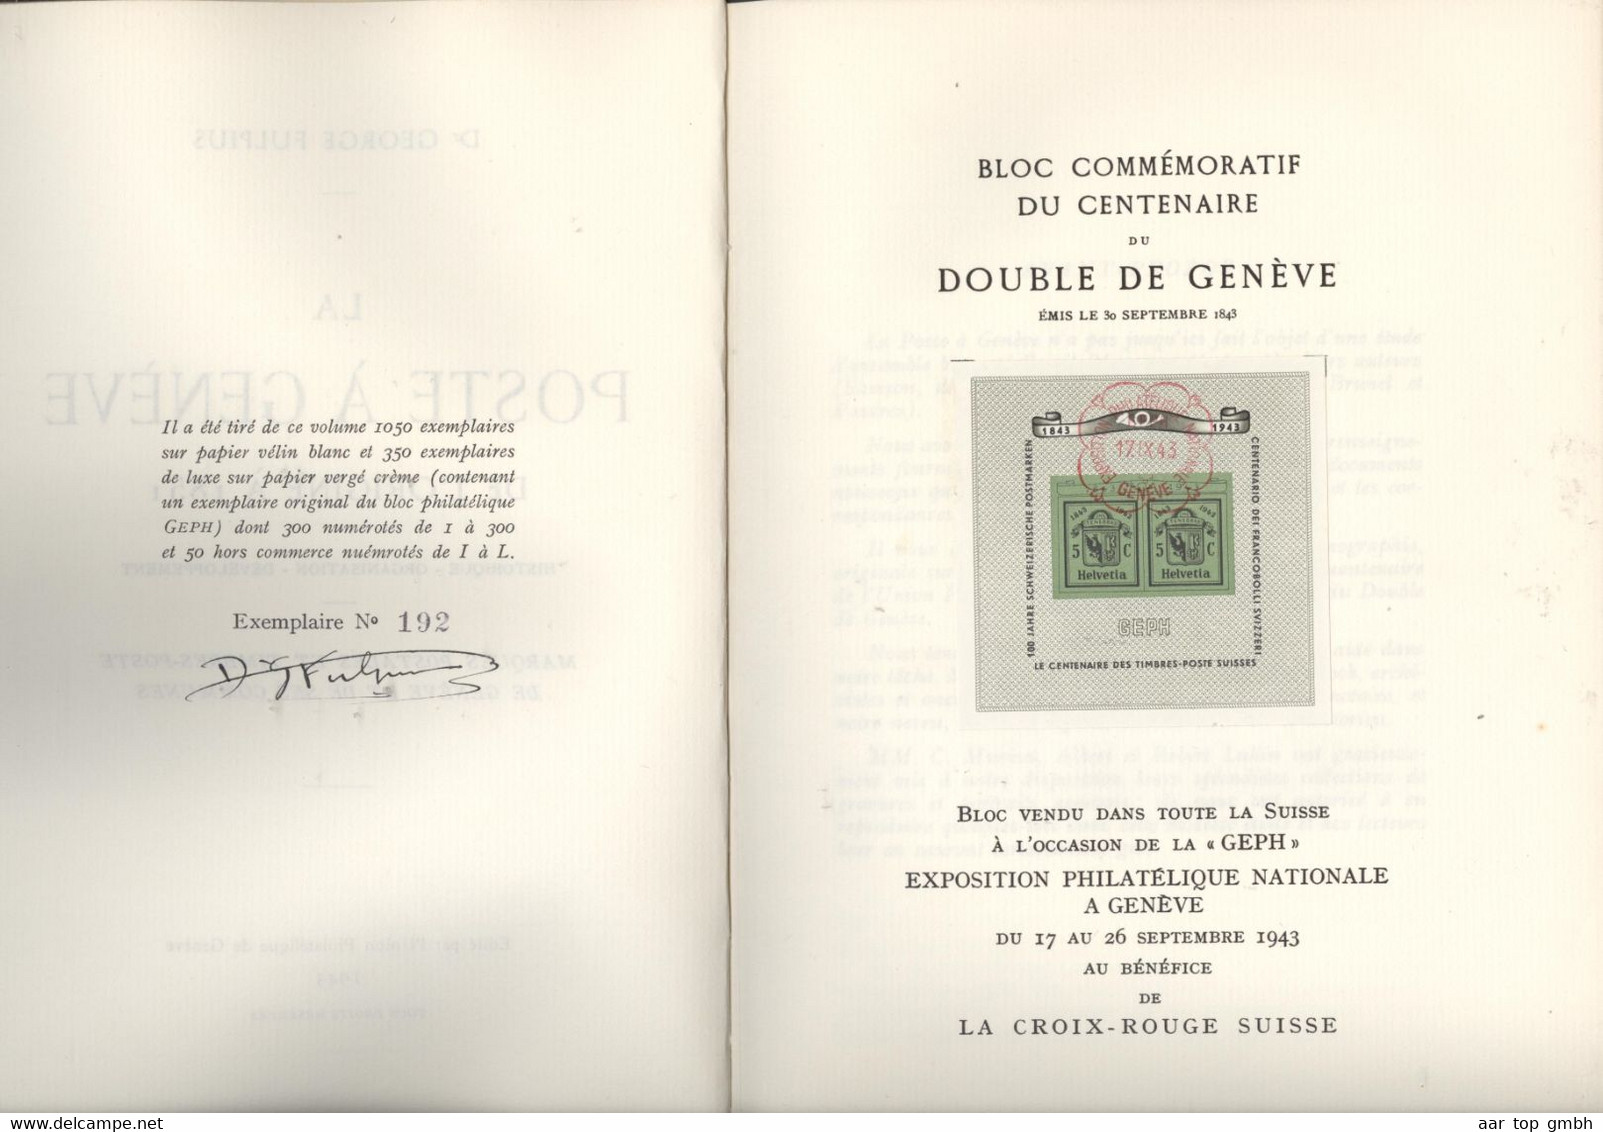 Schweiz, La Poste à Genève De L'origine à 1851, Dr. George Fulpius 1943 #192/300 84S. 200gr Mit Block - Autres & Non Classés